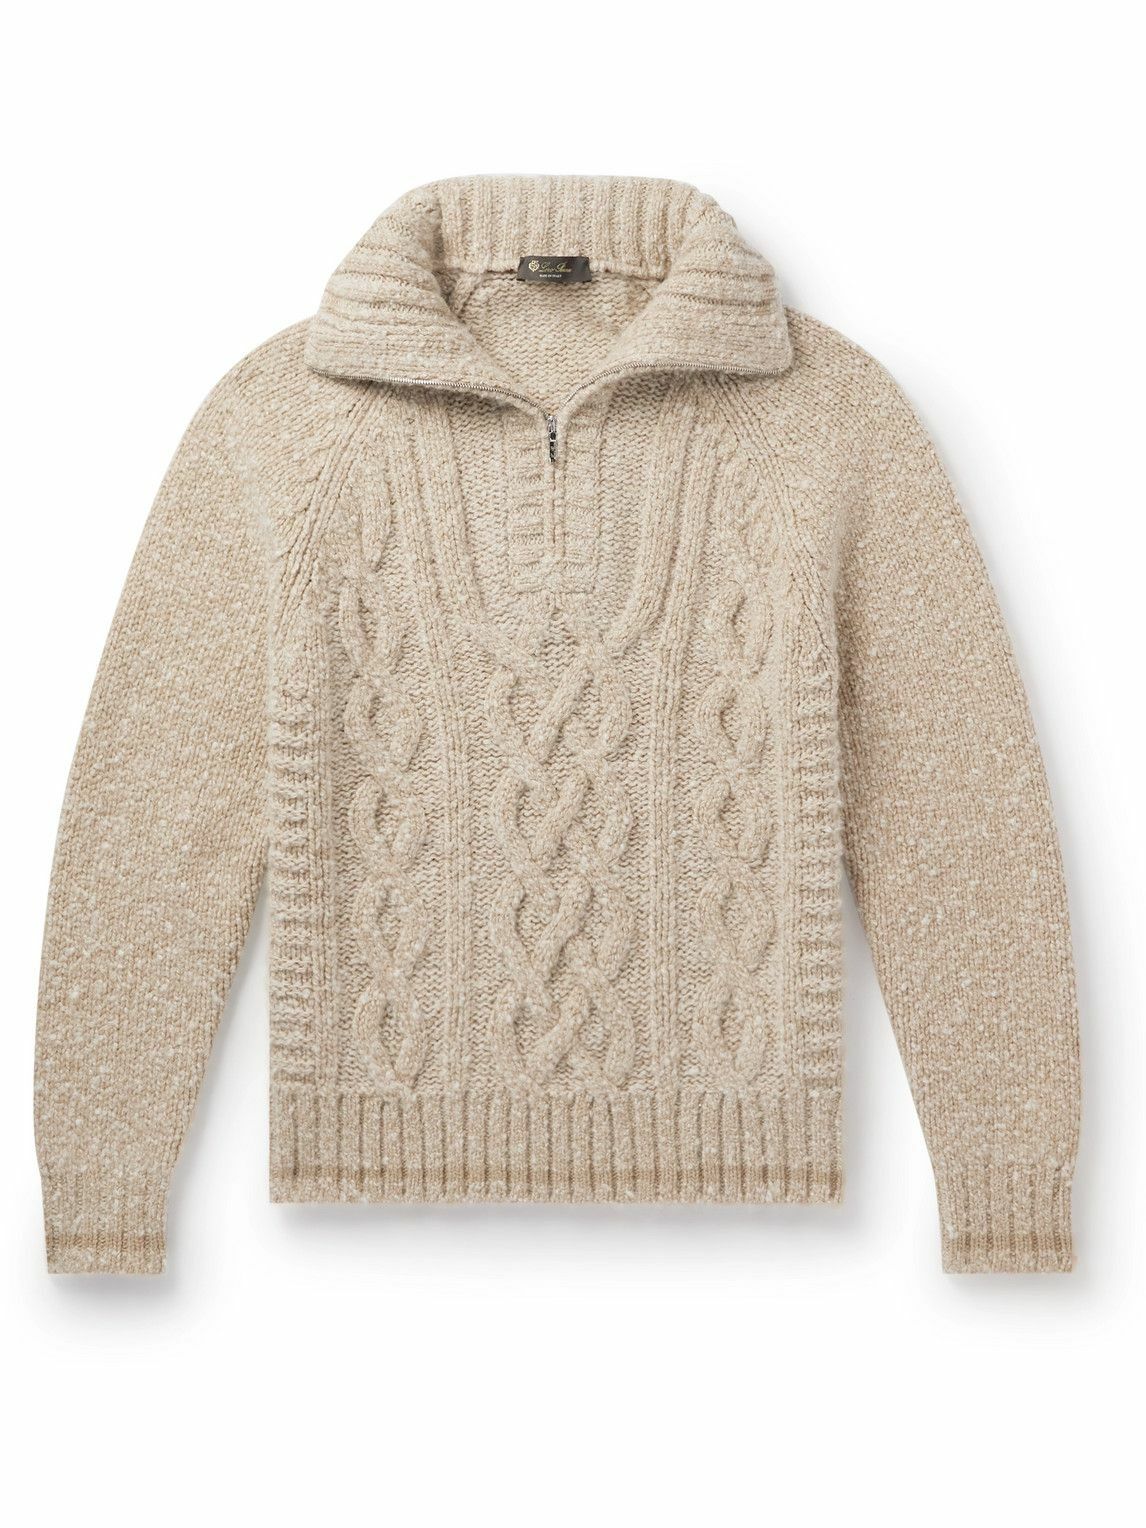 Loro Piana - Cable-Knit Cashmere Half-Zip Sweater - Neutrals Loro Piana